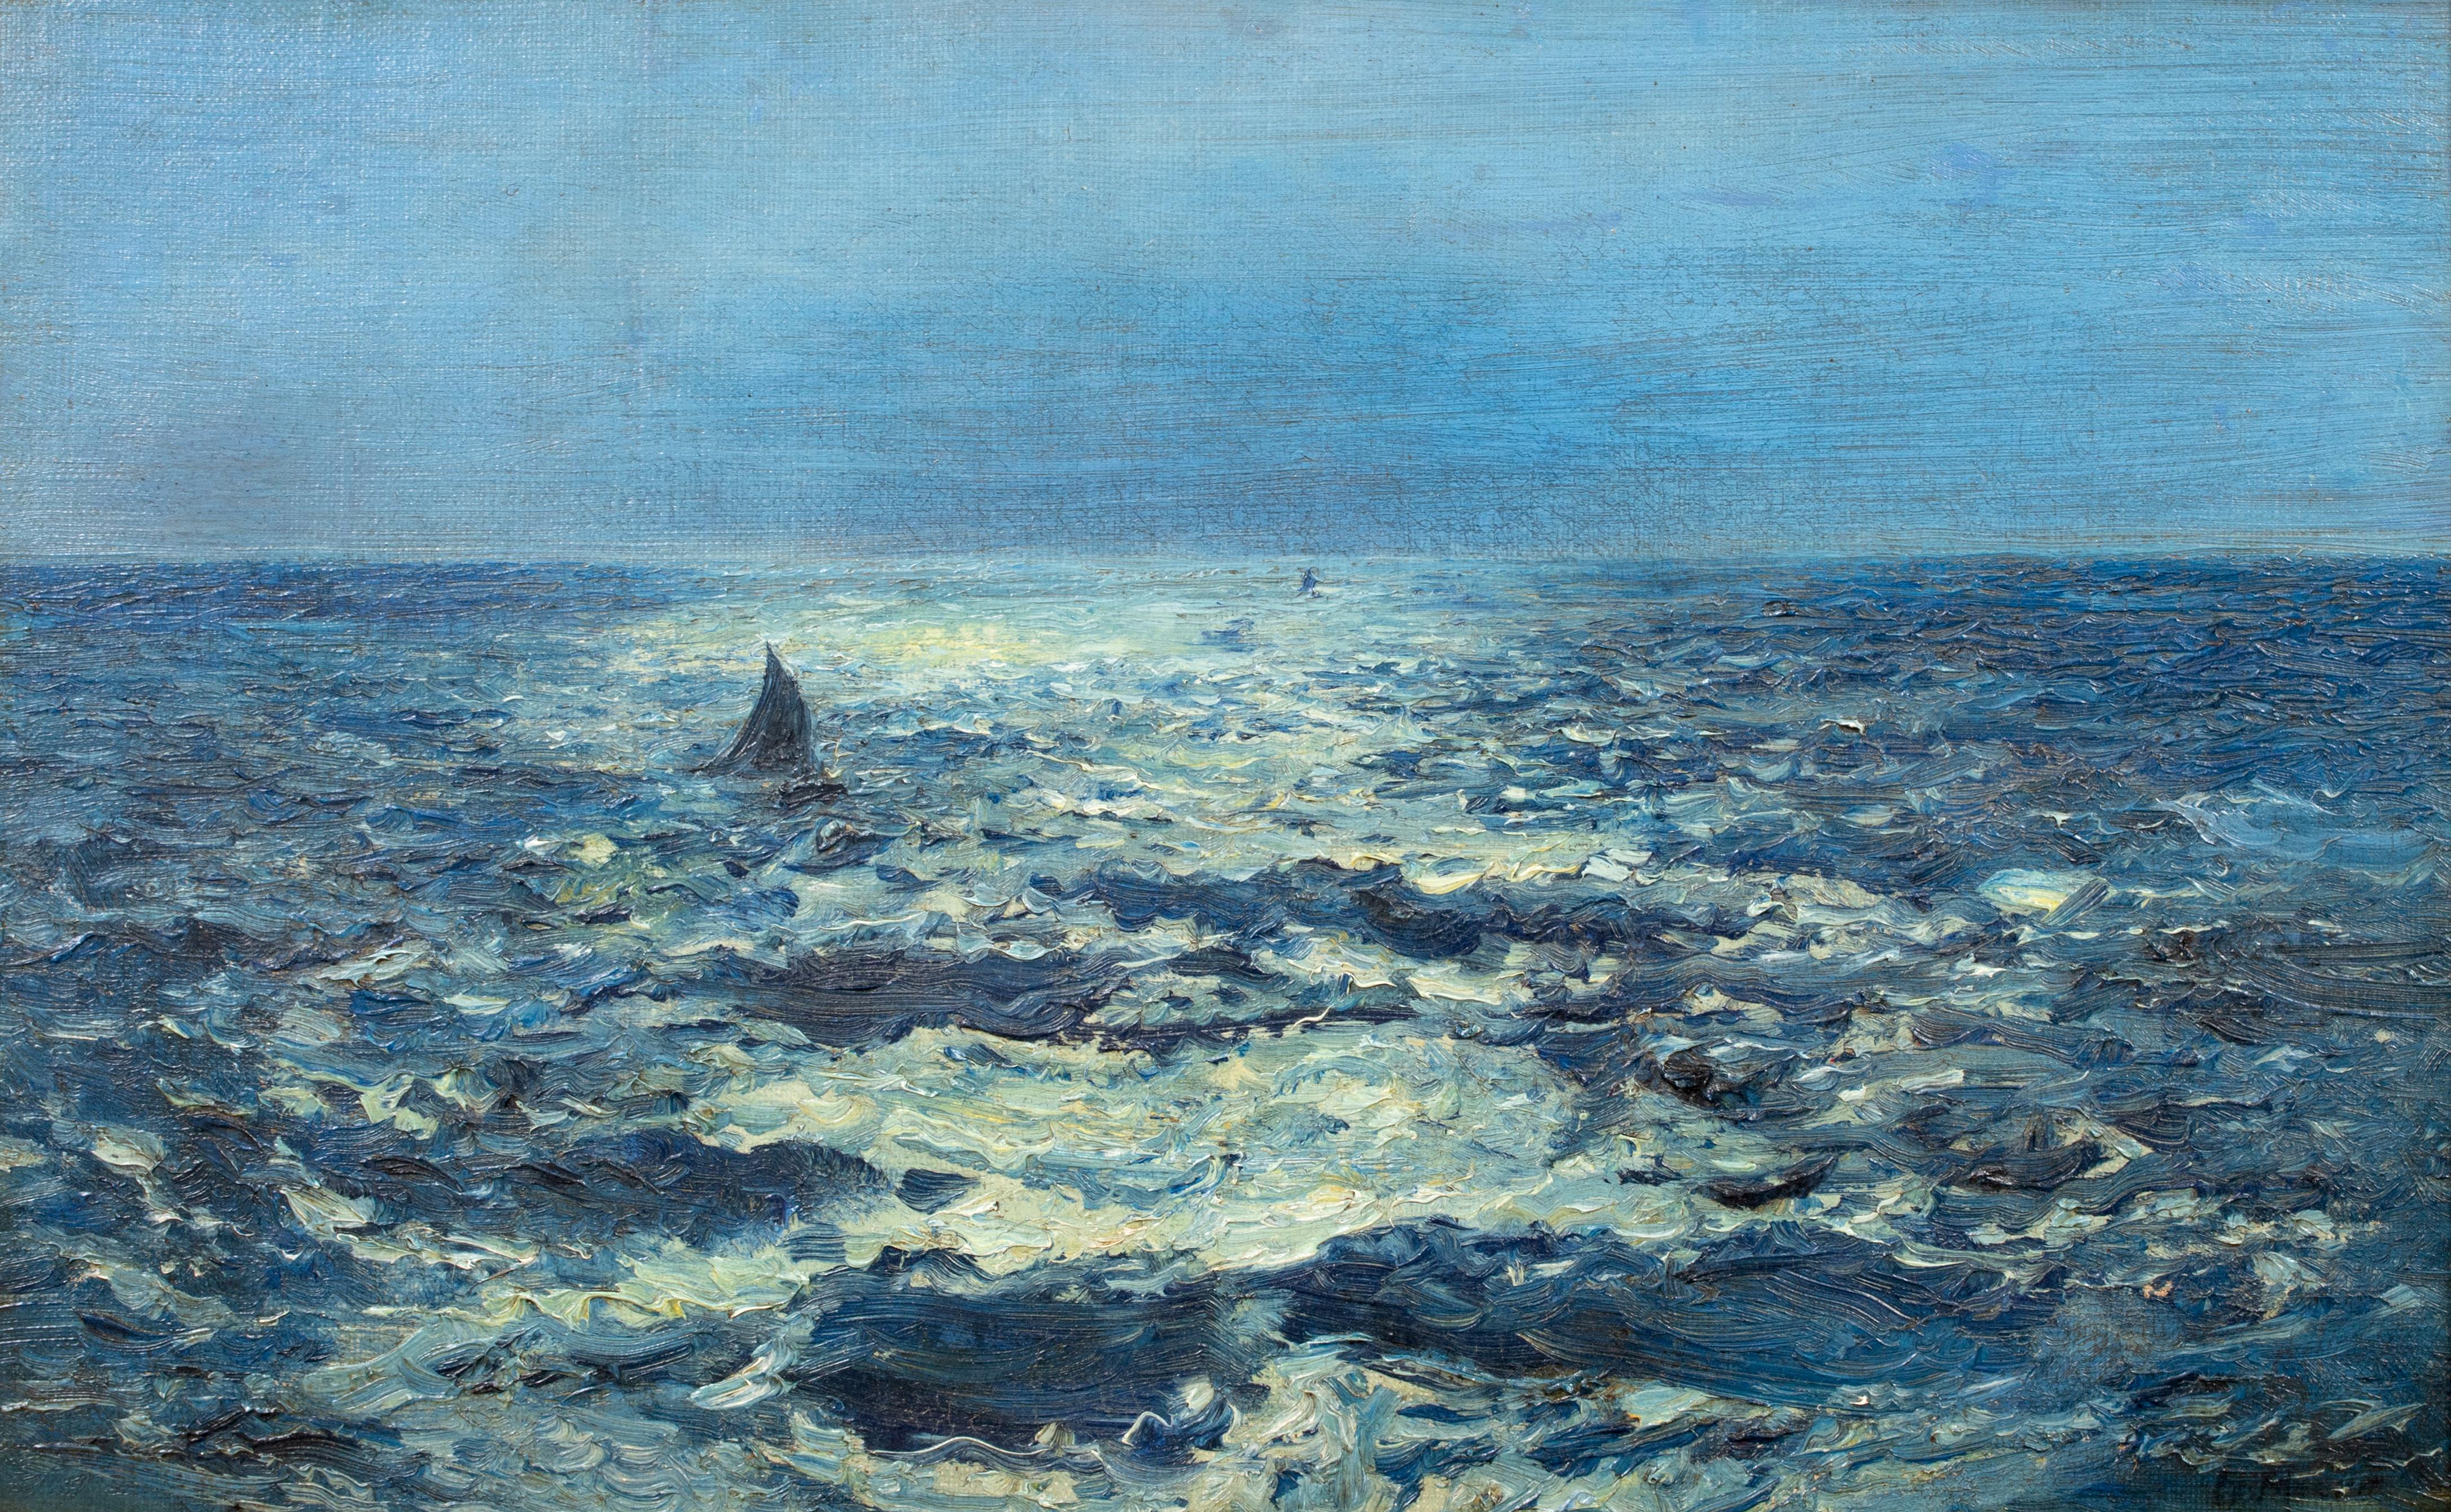 Paysage marin au clair de lune, 19e siècle 

de HENRY MOORE (1831-1895) à 45 000

Nocturne du 19e siècle d'un paysage maritime côtier, huile sur toile d'Henry Moore. Excellente qualité et état de conservation. Vue côtière étendue d'un paysage marin